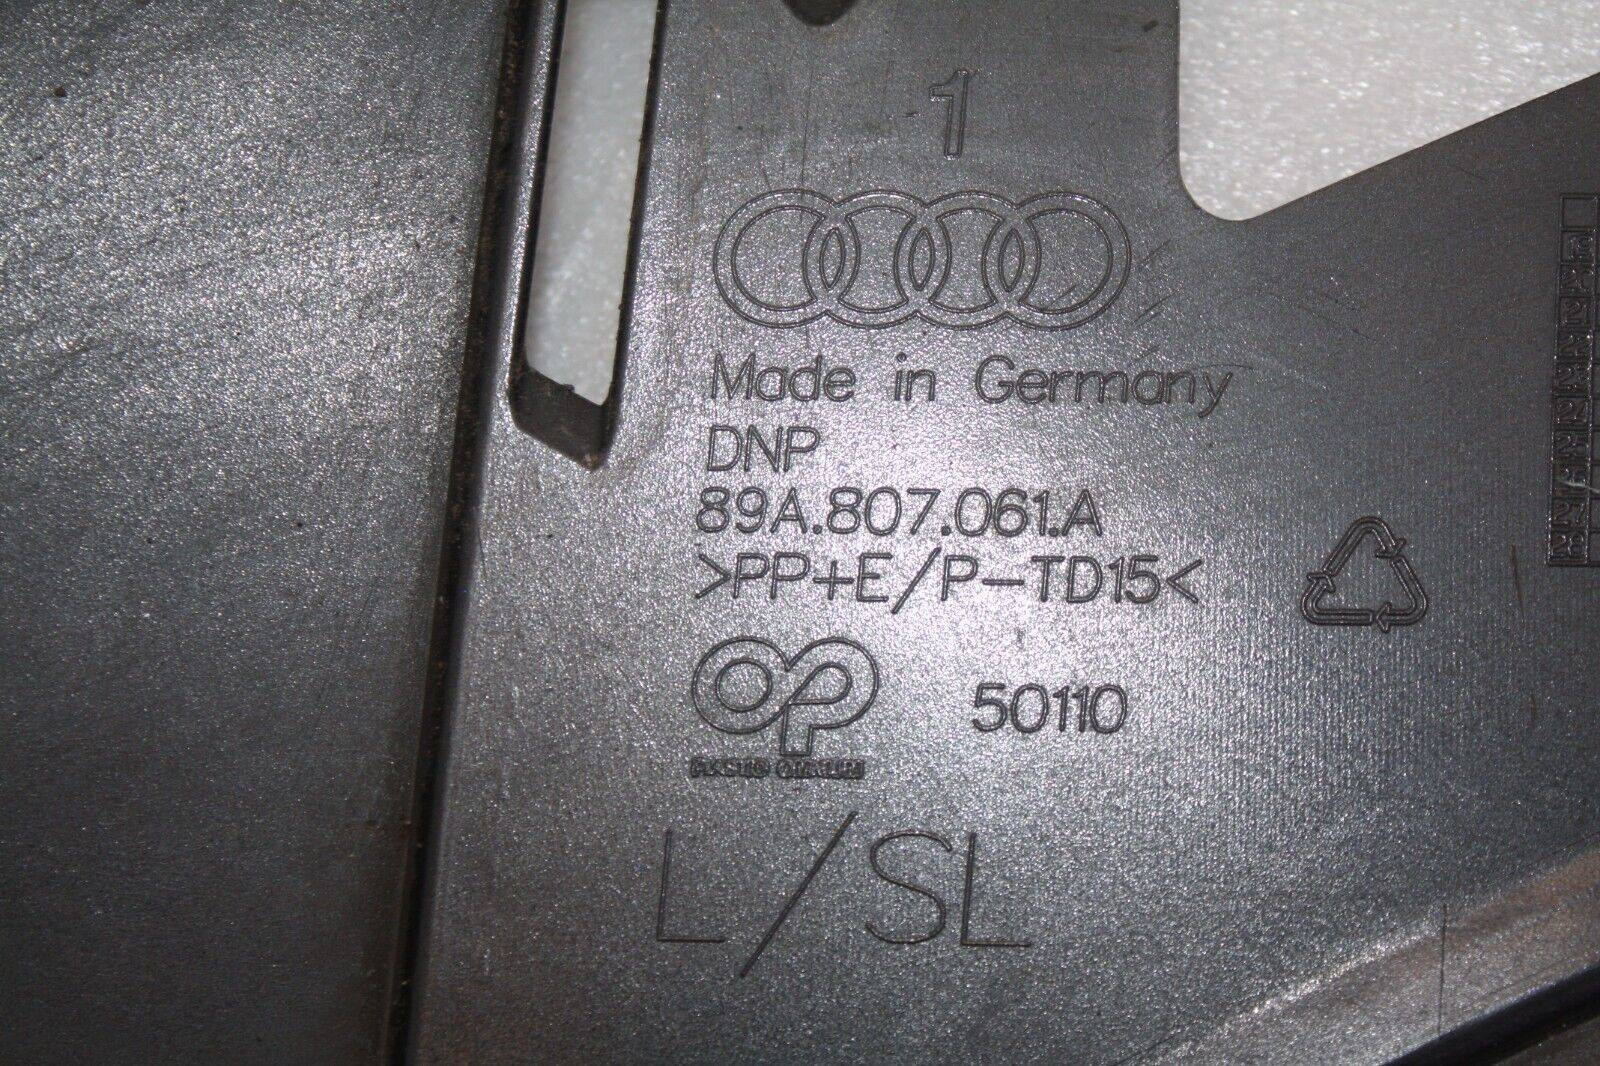 Audi-Q4-E-Tron-Front-Bumper-Lower-Section-89A807061A-Genuine-176183796215-8